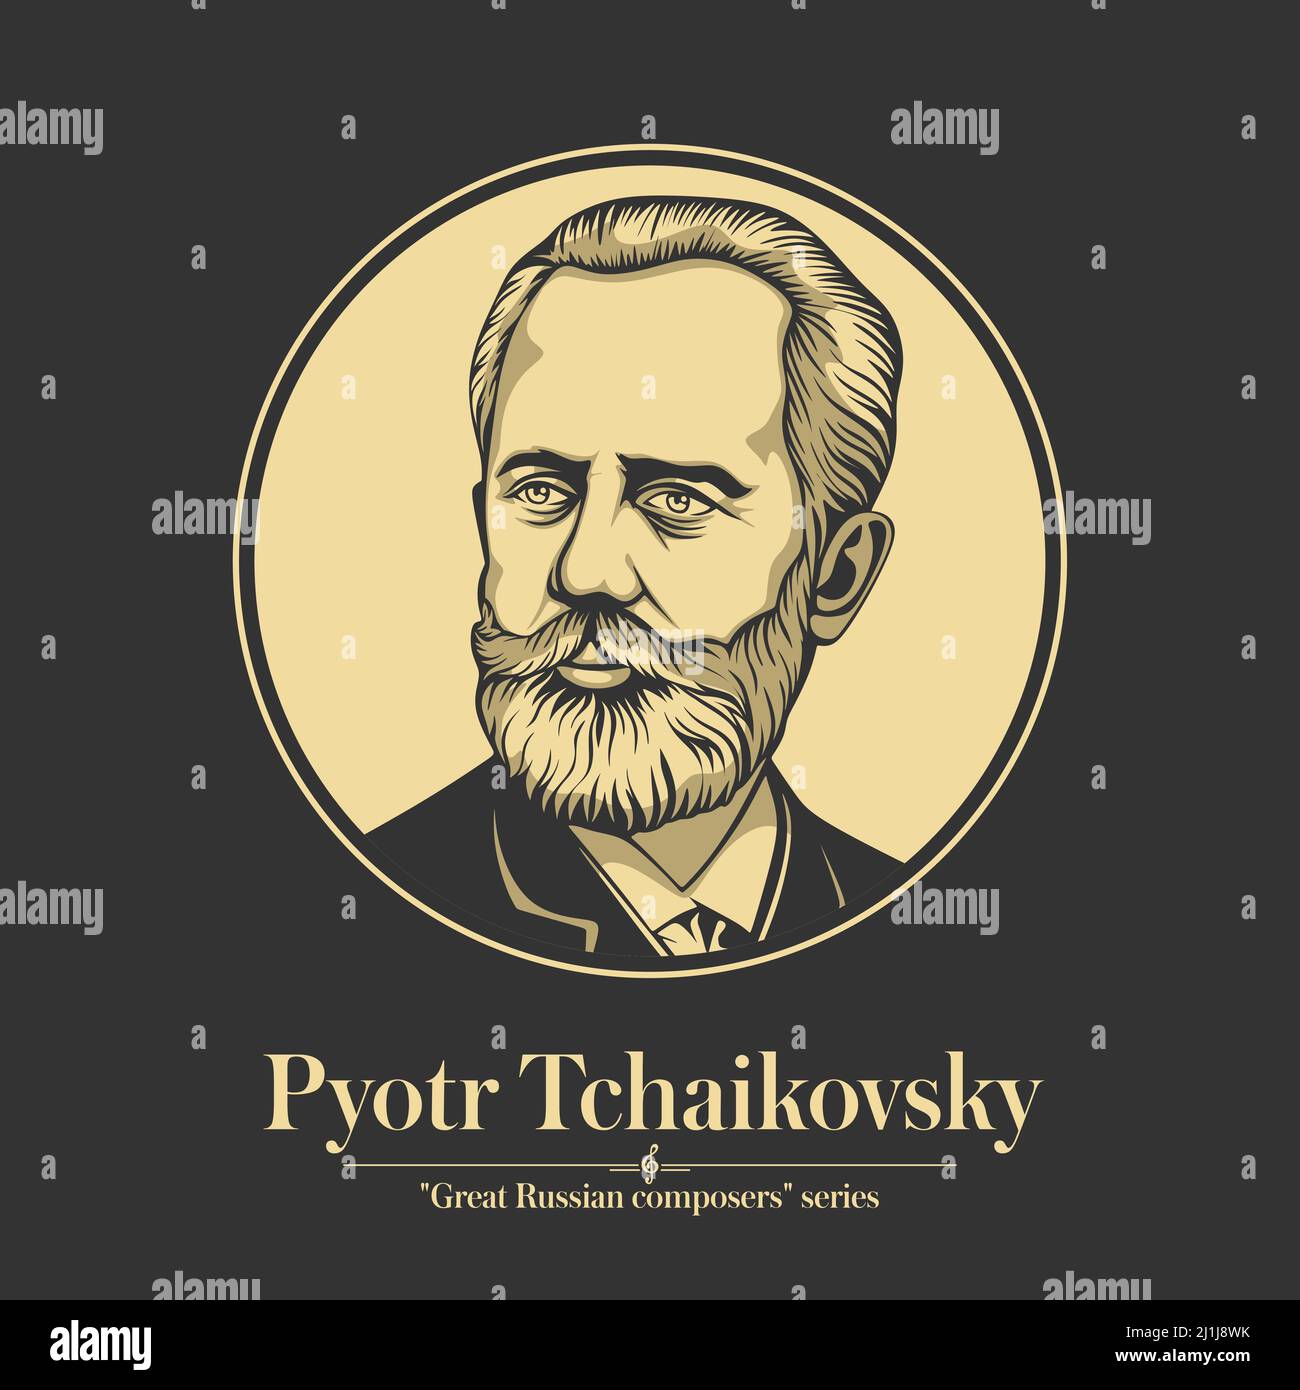 Grande compositore russo. Pyotr Tchaikovsky era un compositore russo del periodo romantico. Illustrazione Vettoriale